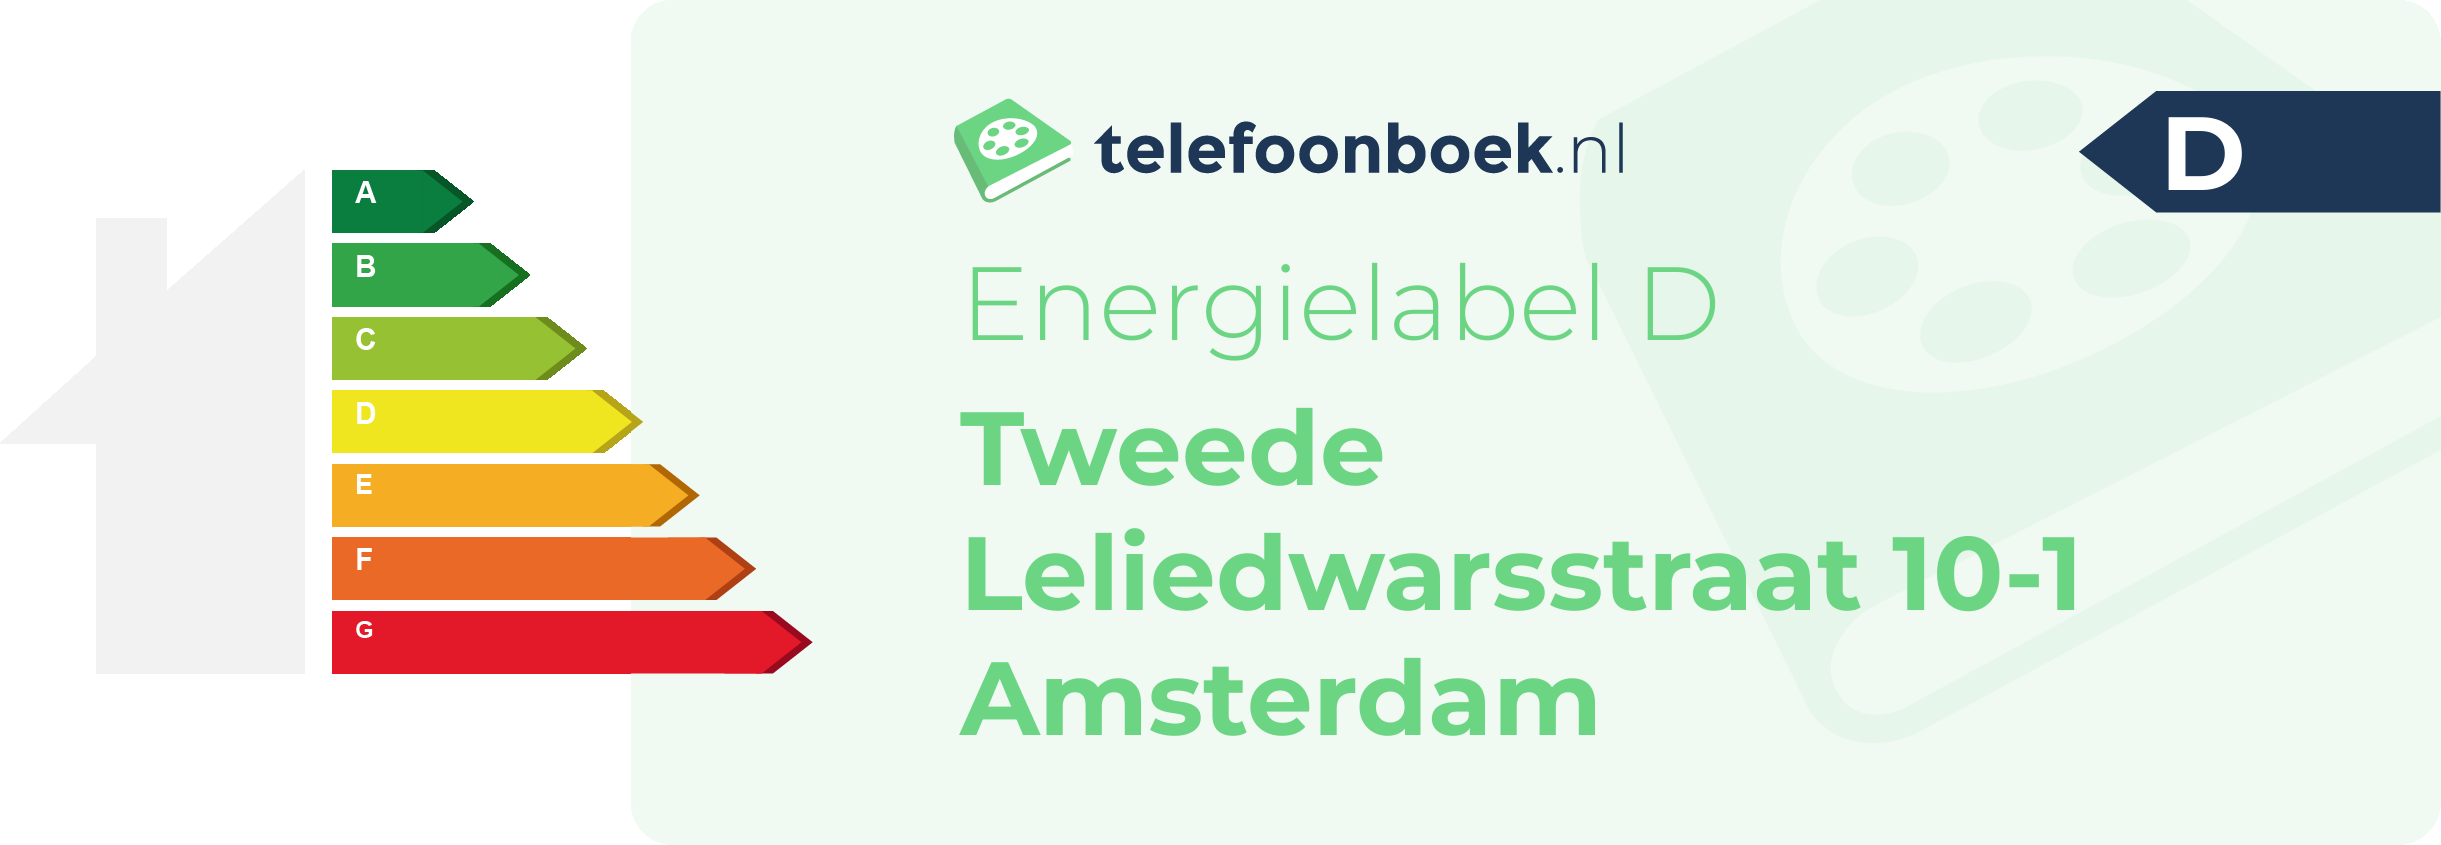 Energielabel Tweede Leliedwarsstraat 10-1 Amsterdam